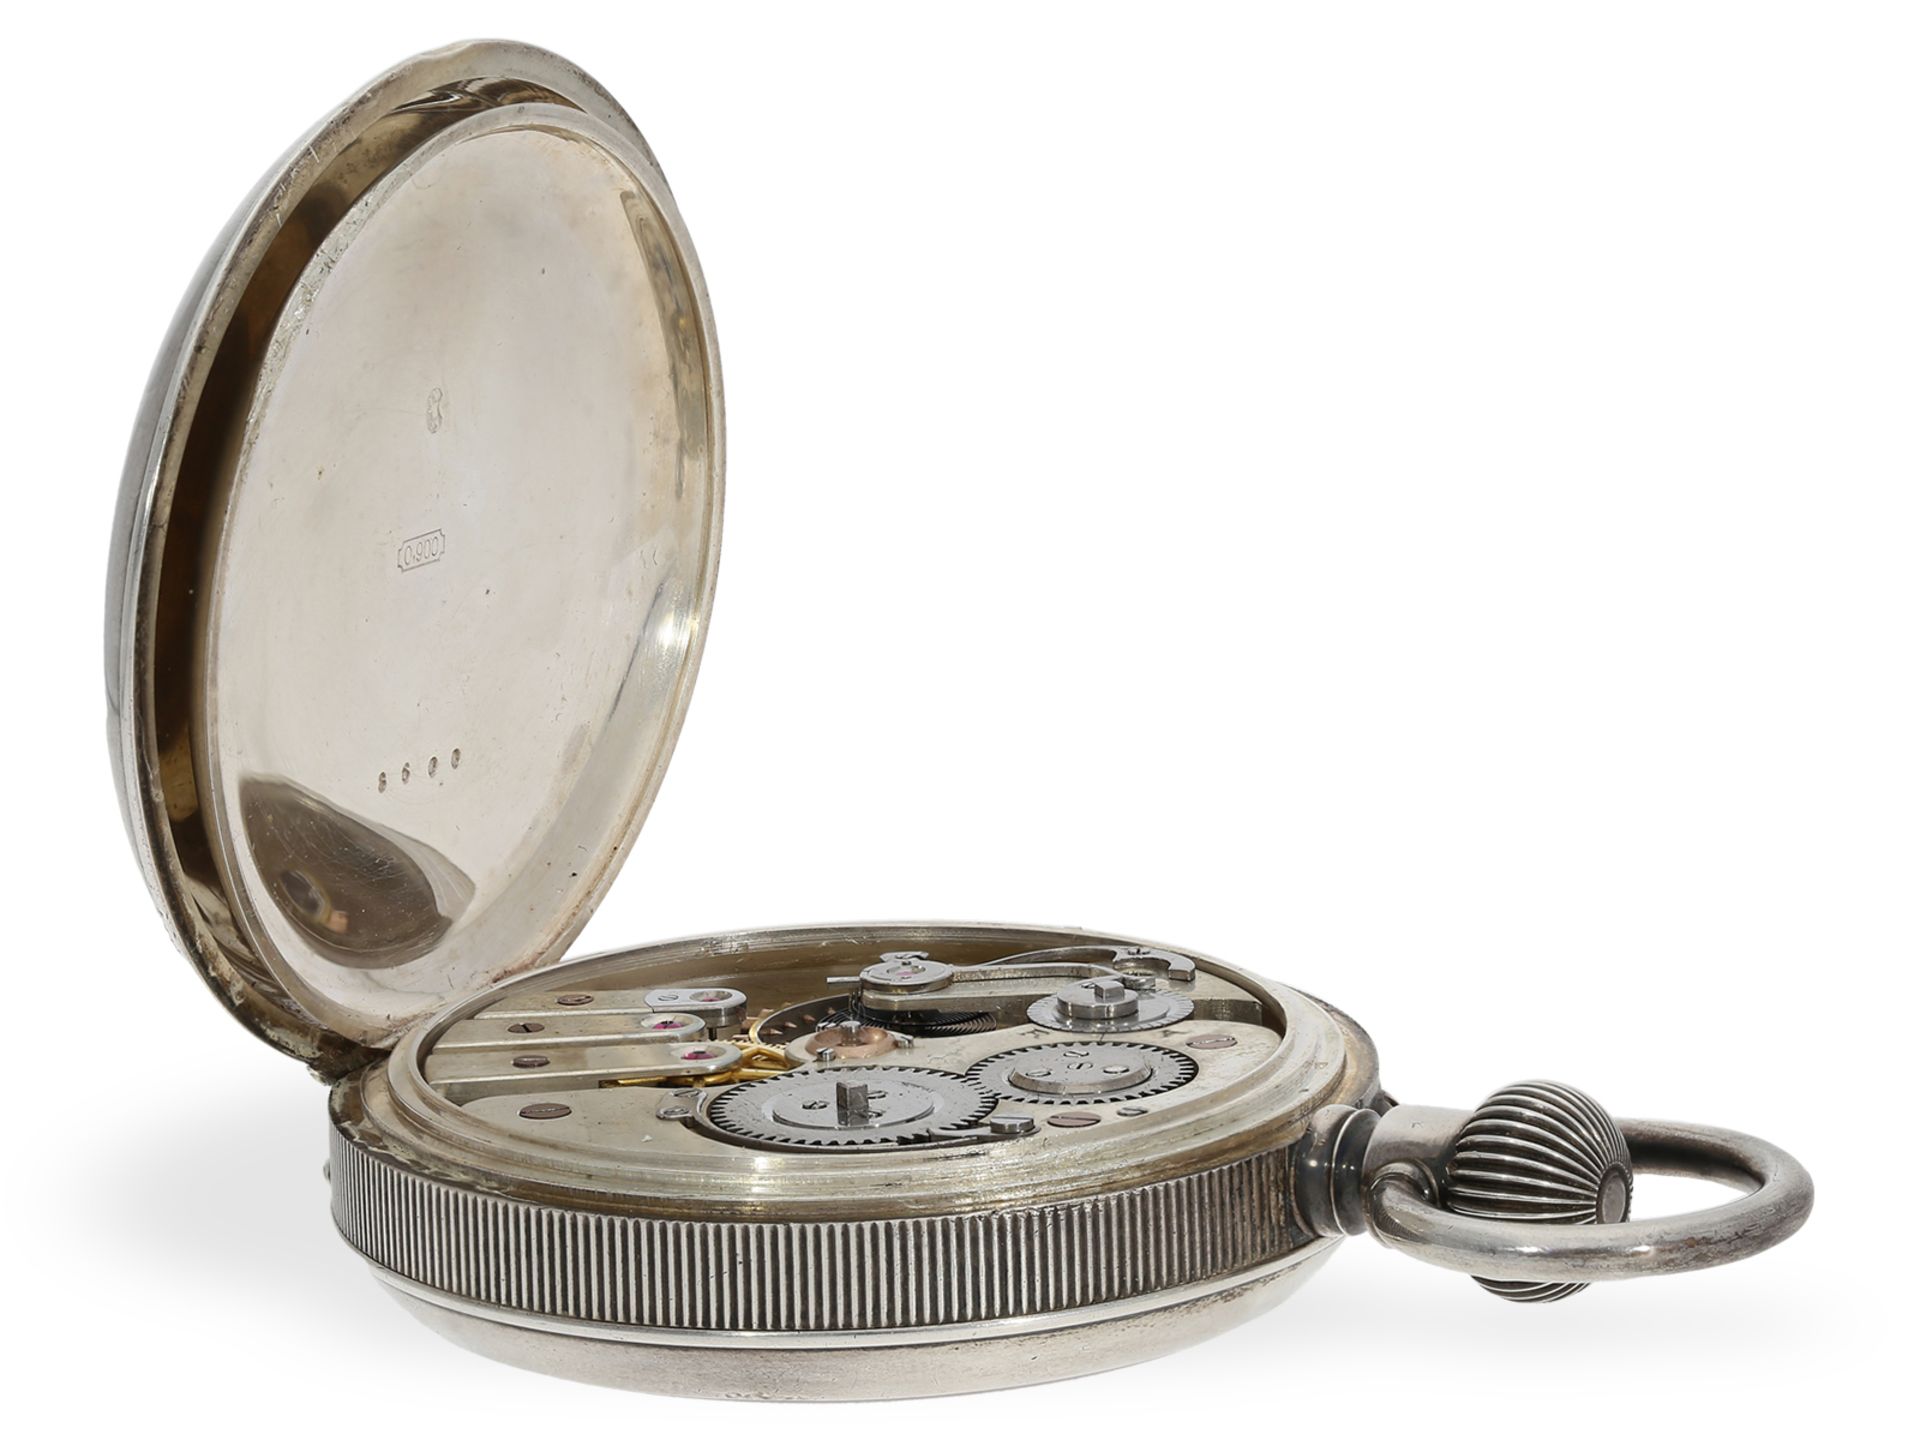 Taschenuhr: äußerst seltenes Ulysse Nardin Chronometer mit elektrischer Kontaktvorrichtung, ca.1880 - Bild 4 aus 5